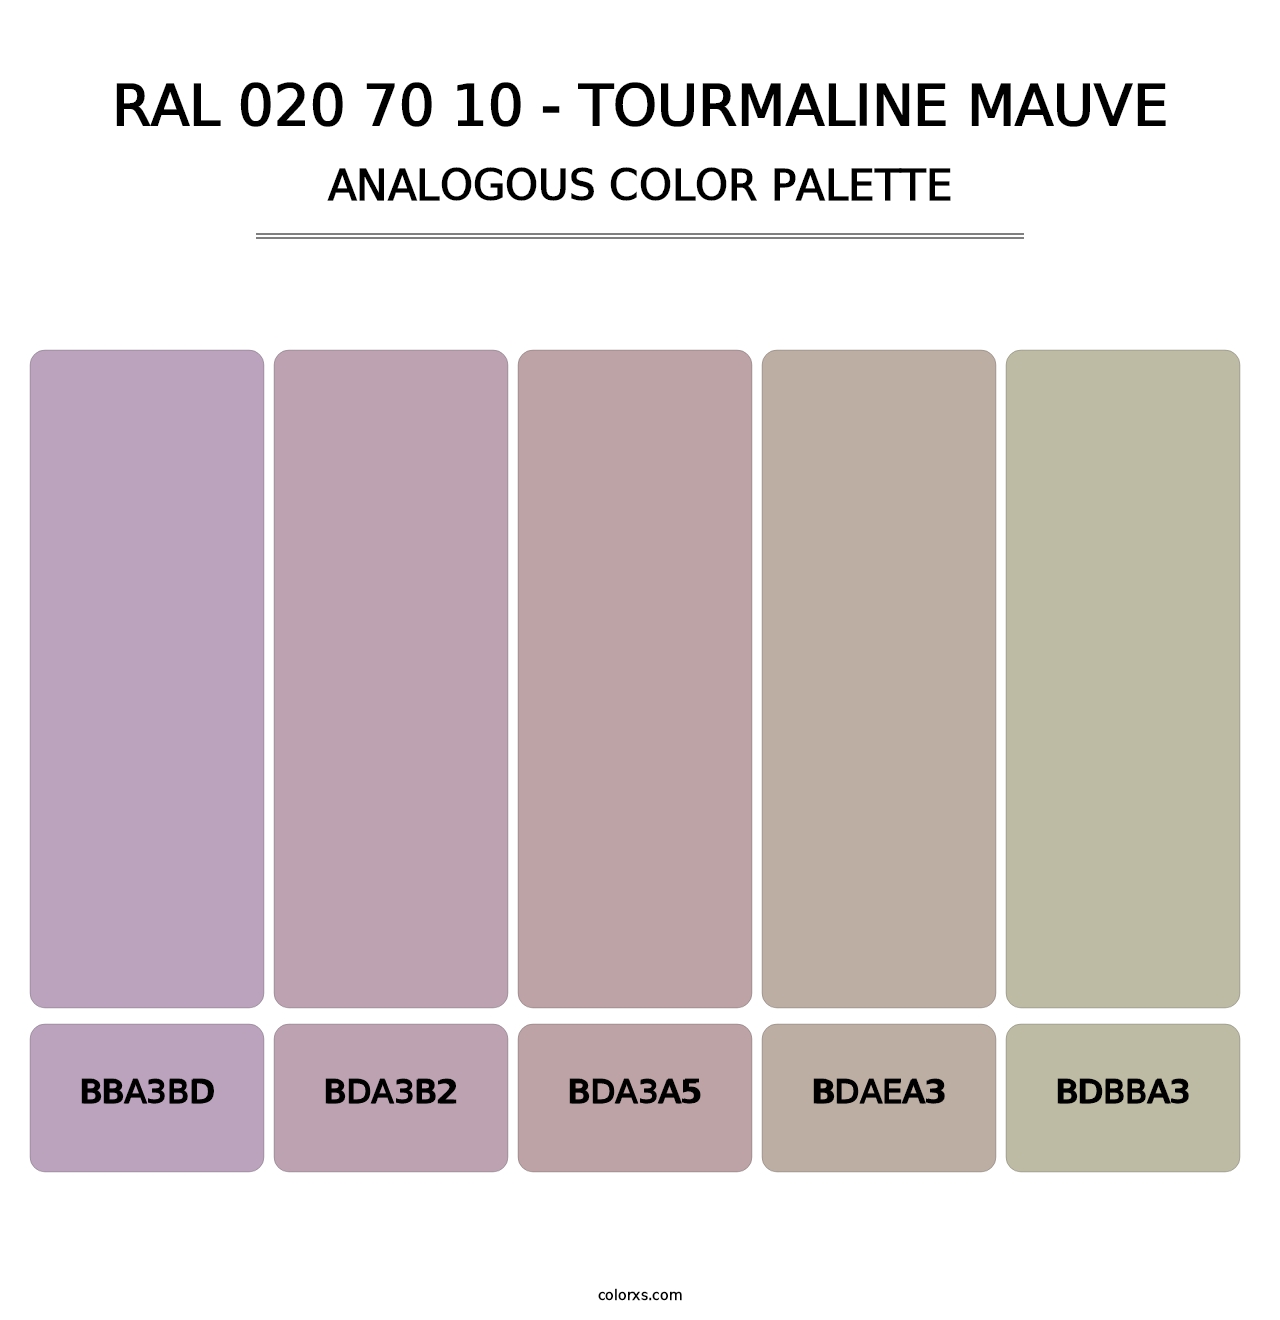 RAL 020 70 10 - Tourmaline Mauve - Analogous Color Palette